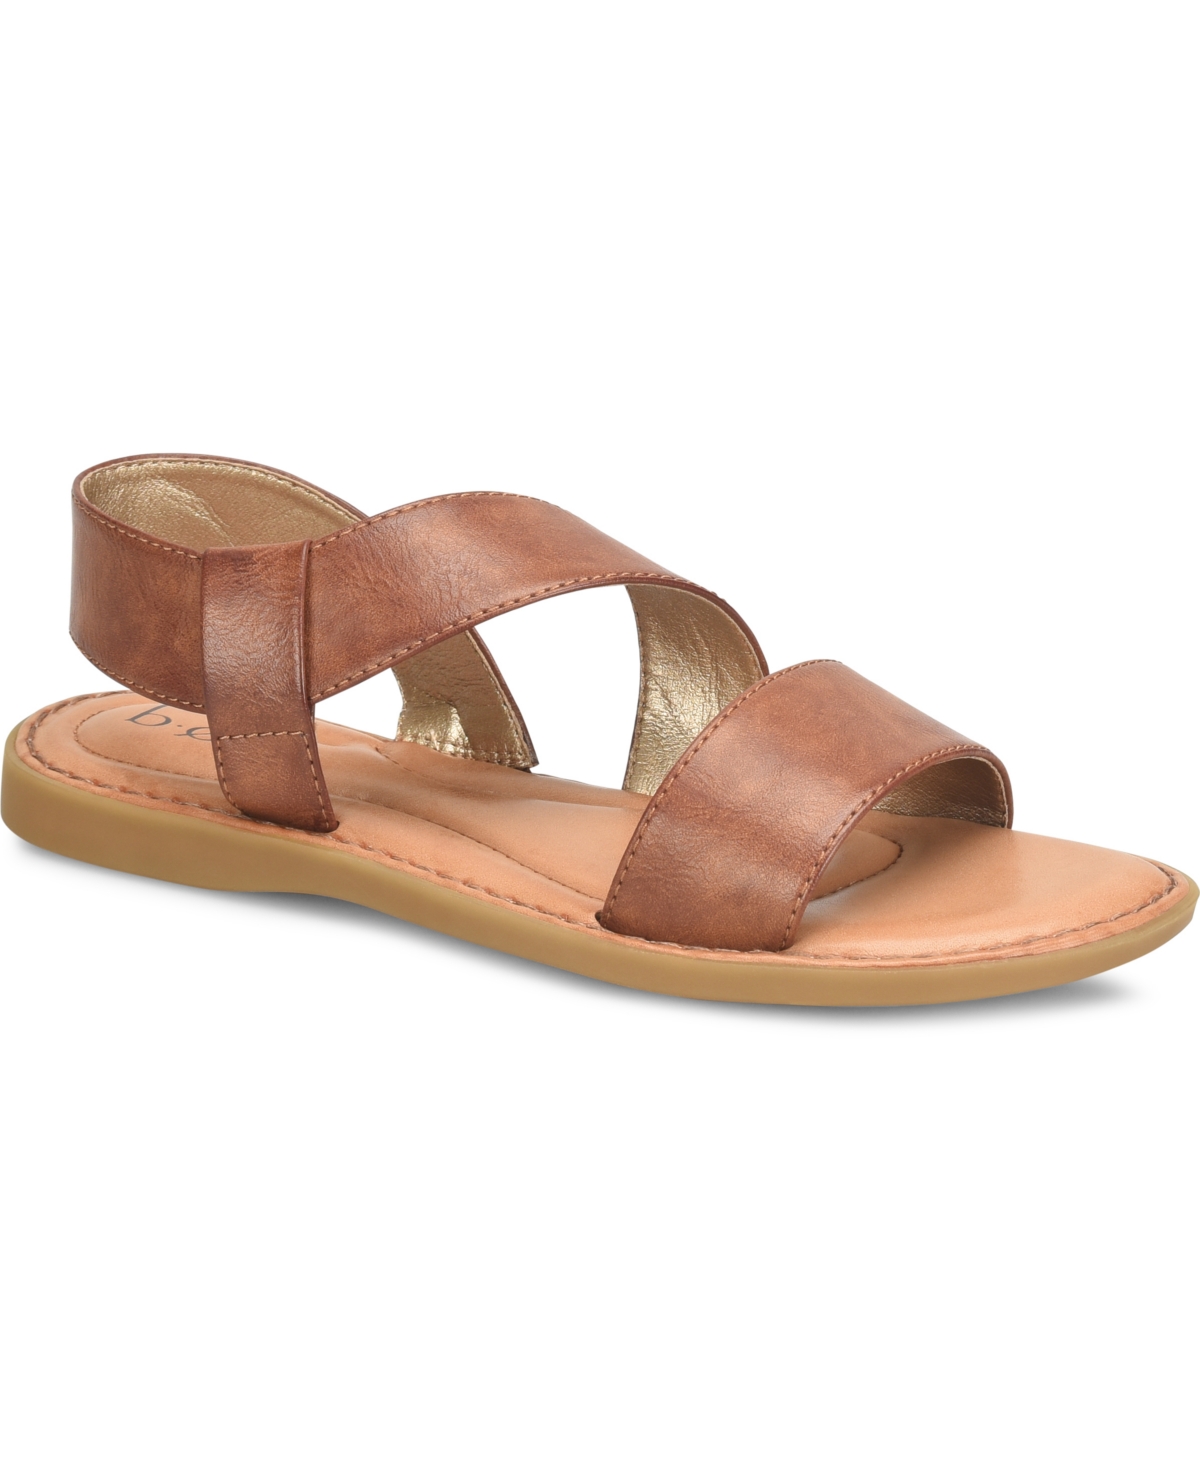 Women's Kacee Criss Cross Flat Comfort Sandals - DARK TAN